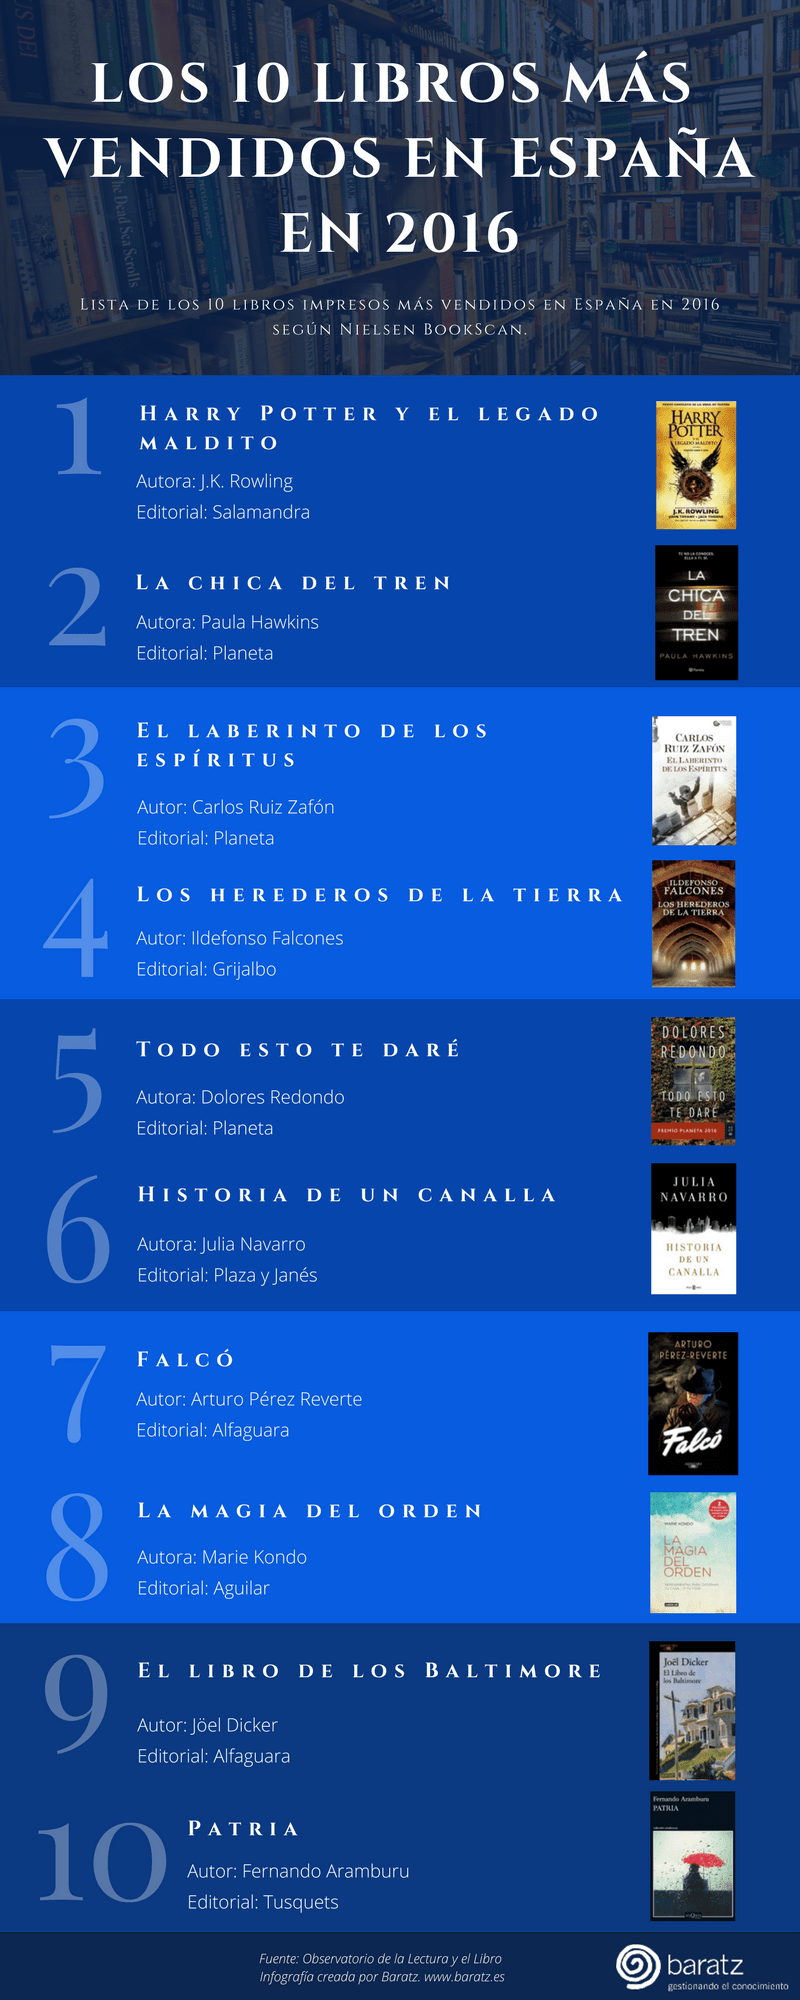 Los 10 libros más vendidos en España en 2016